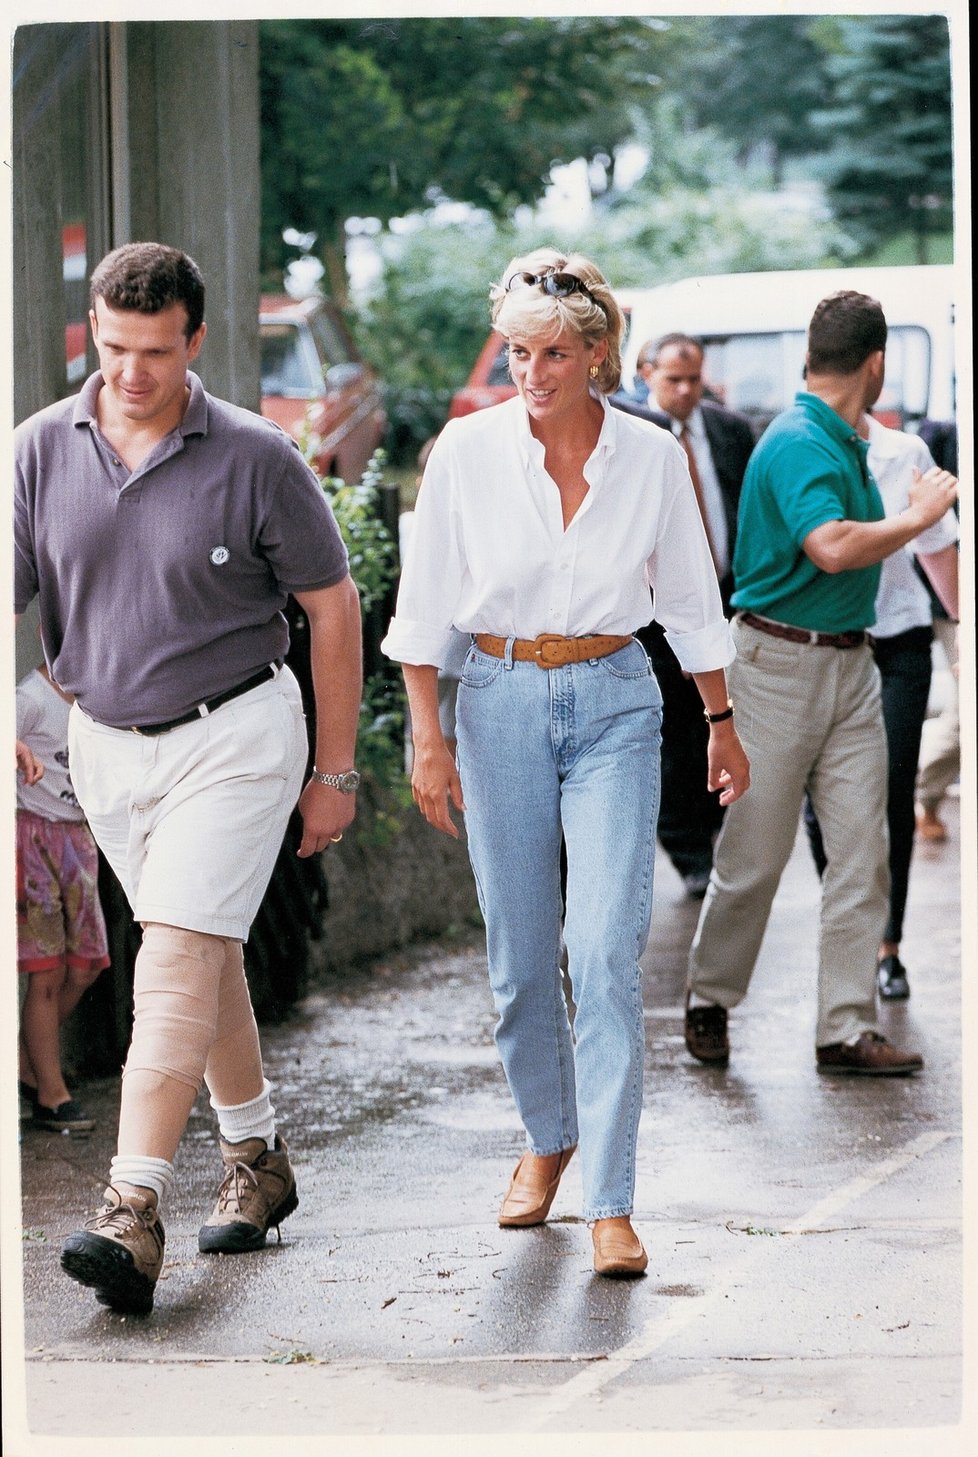 1997: Princezna Diana v džínách v Bosně s Červeným křížem